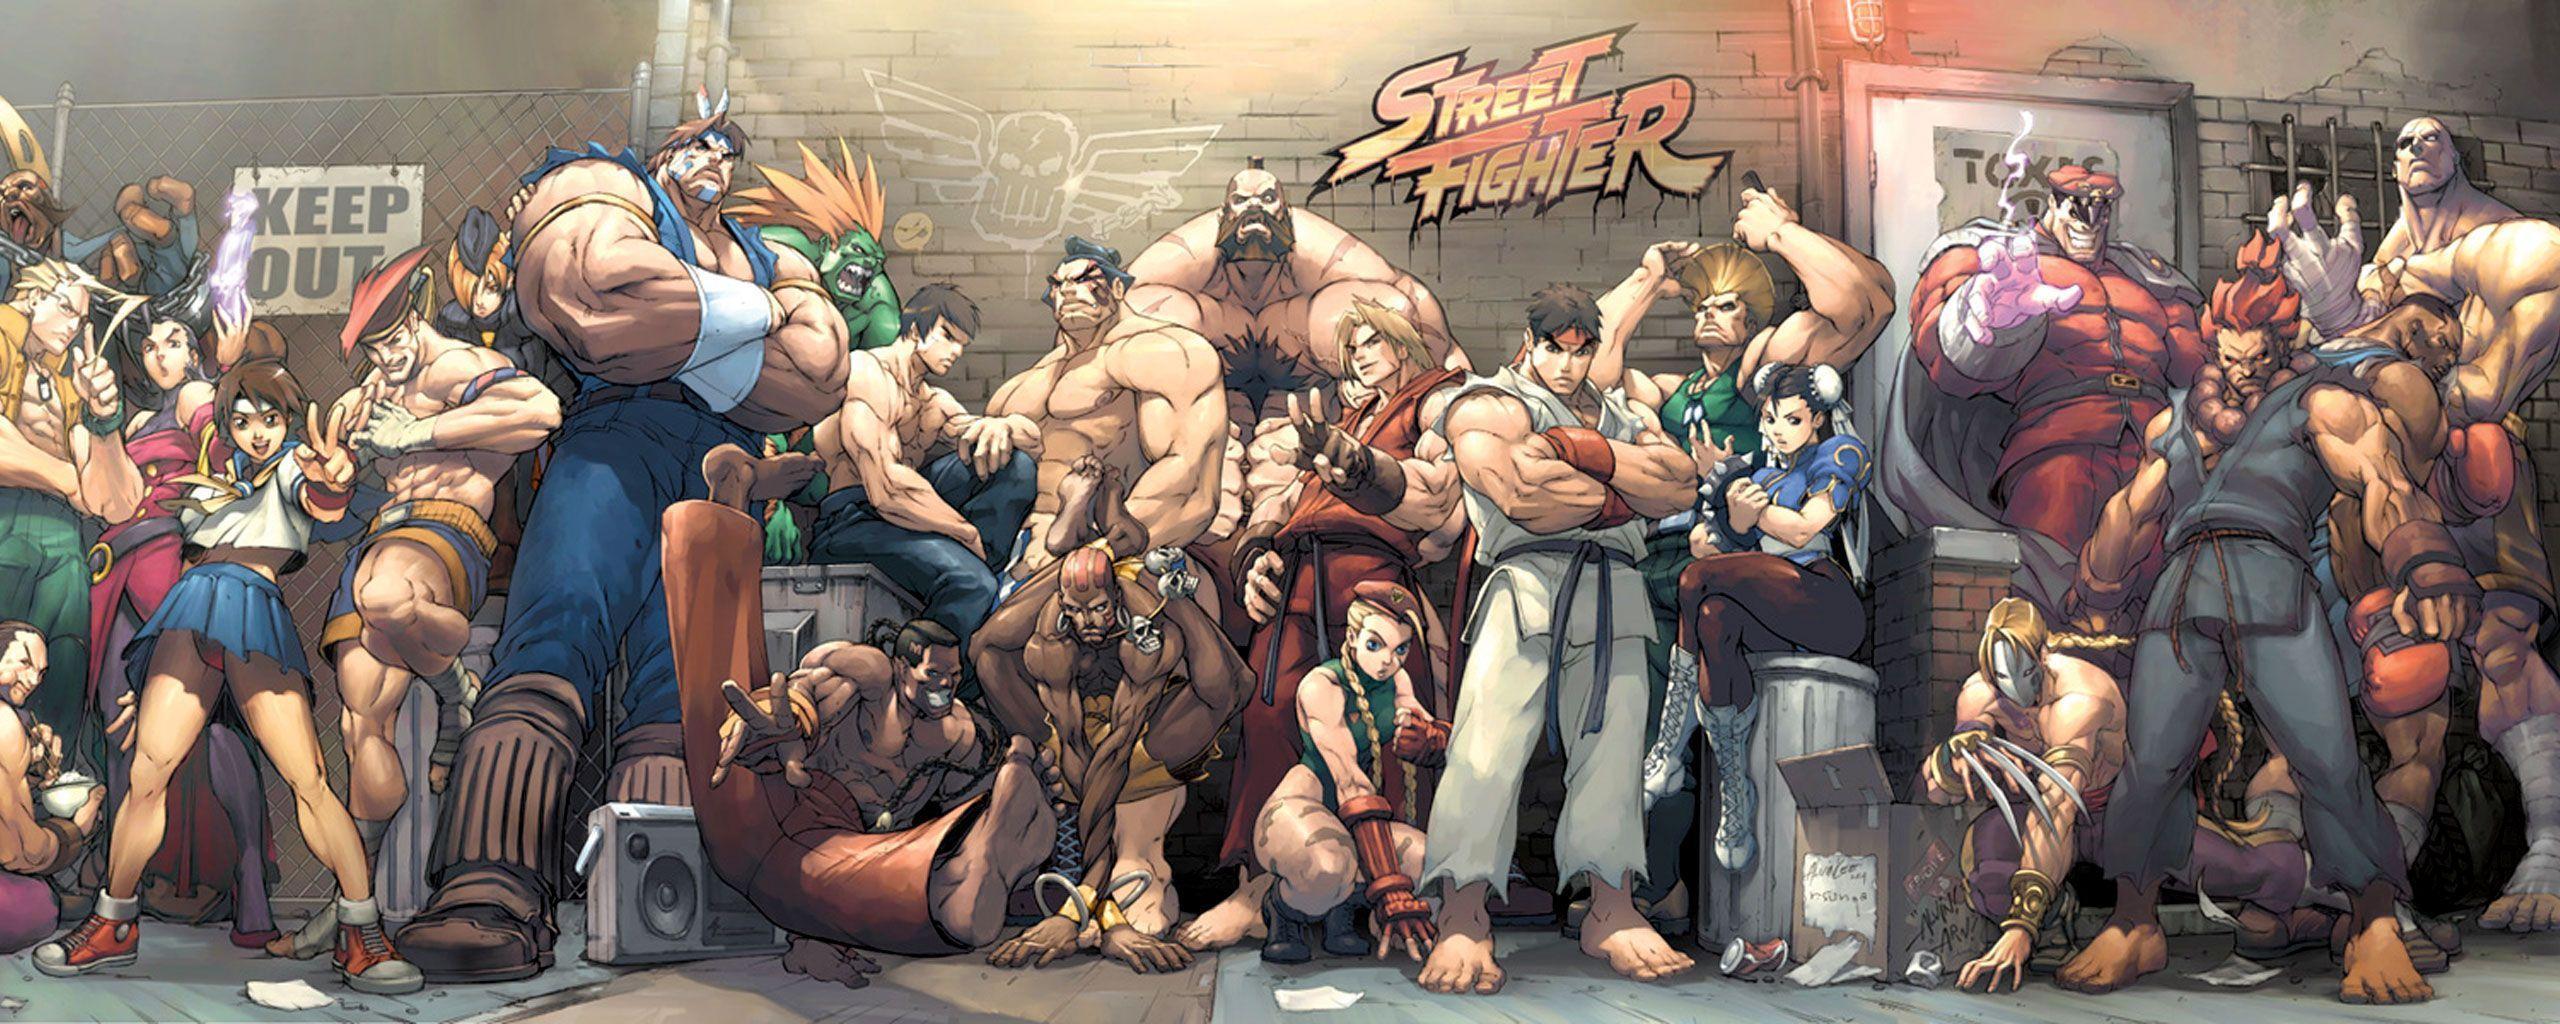 Steam Workshop Street Fighter